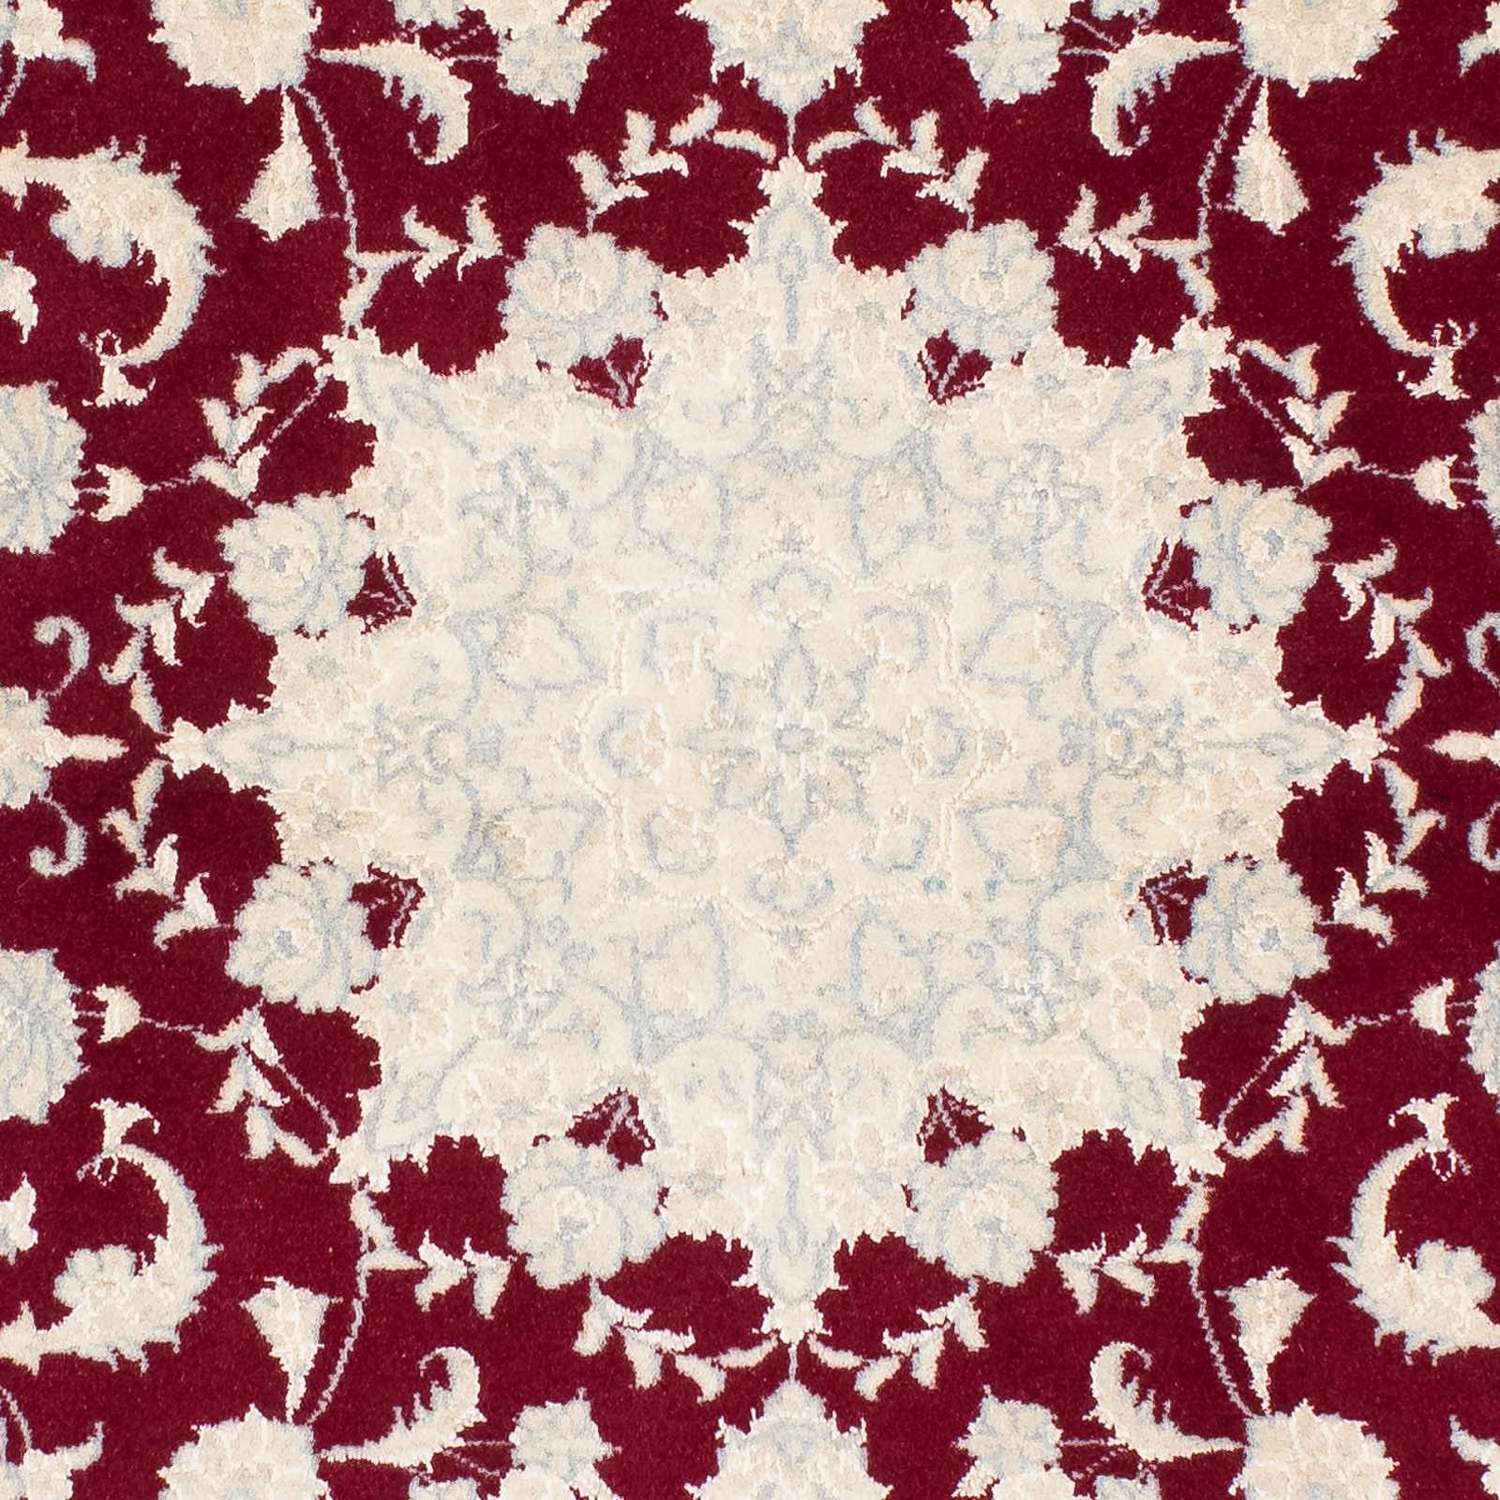 Perzisch tapijt - Nain - Koninklijk - 150 x 97 cm - beige